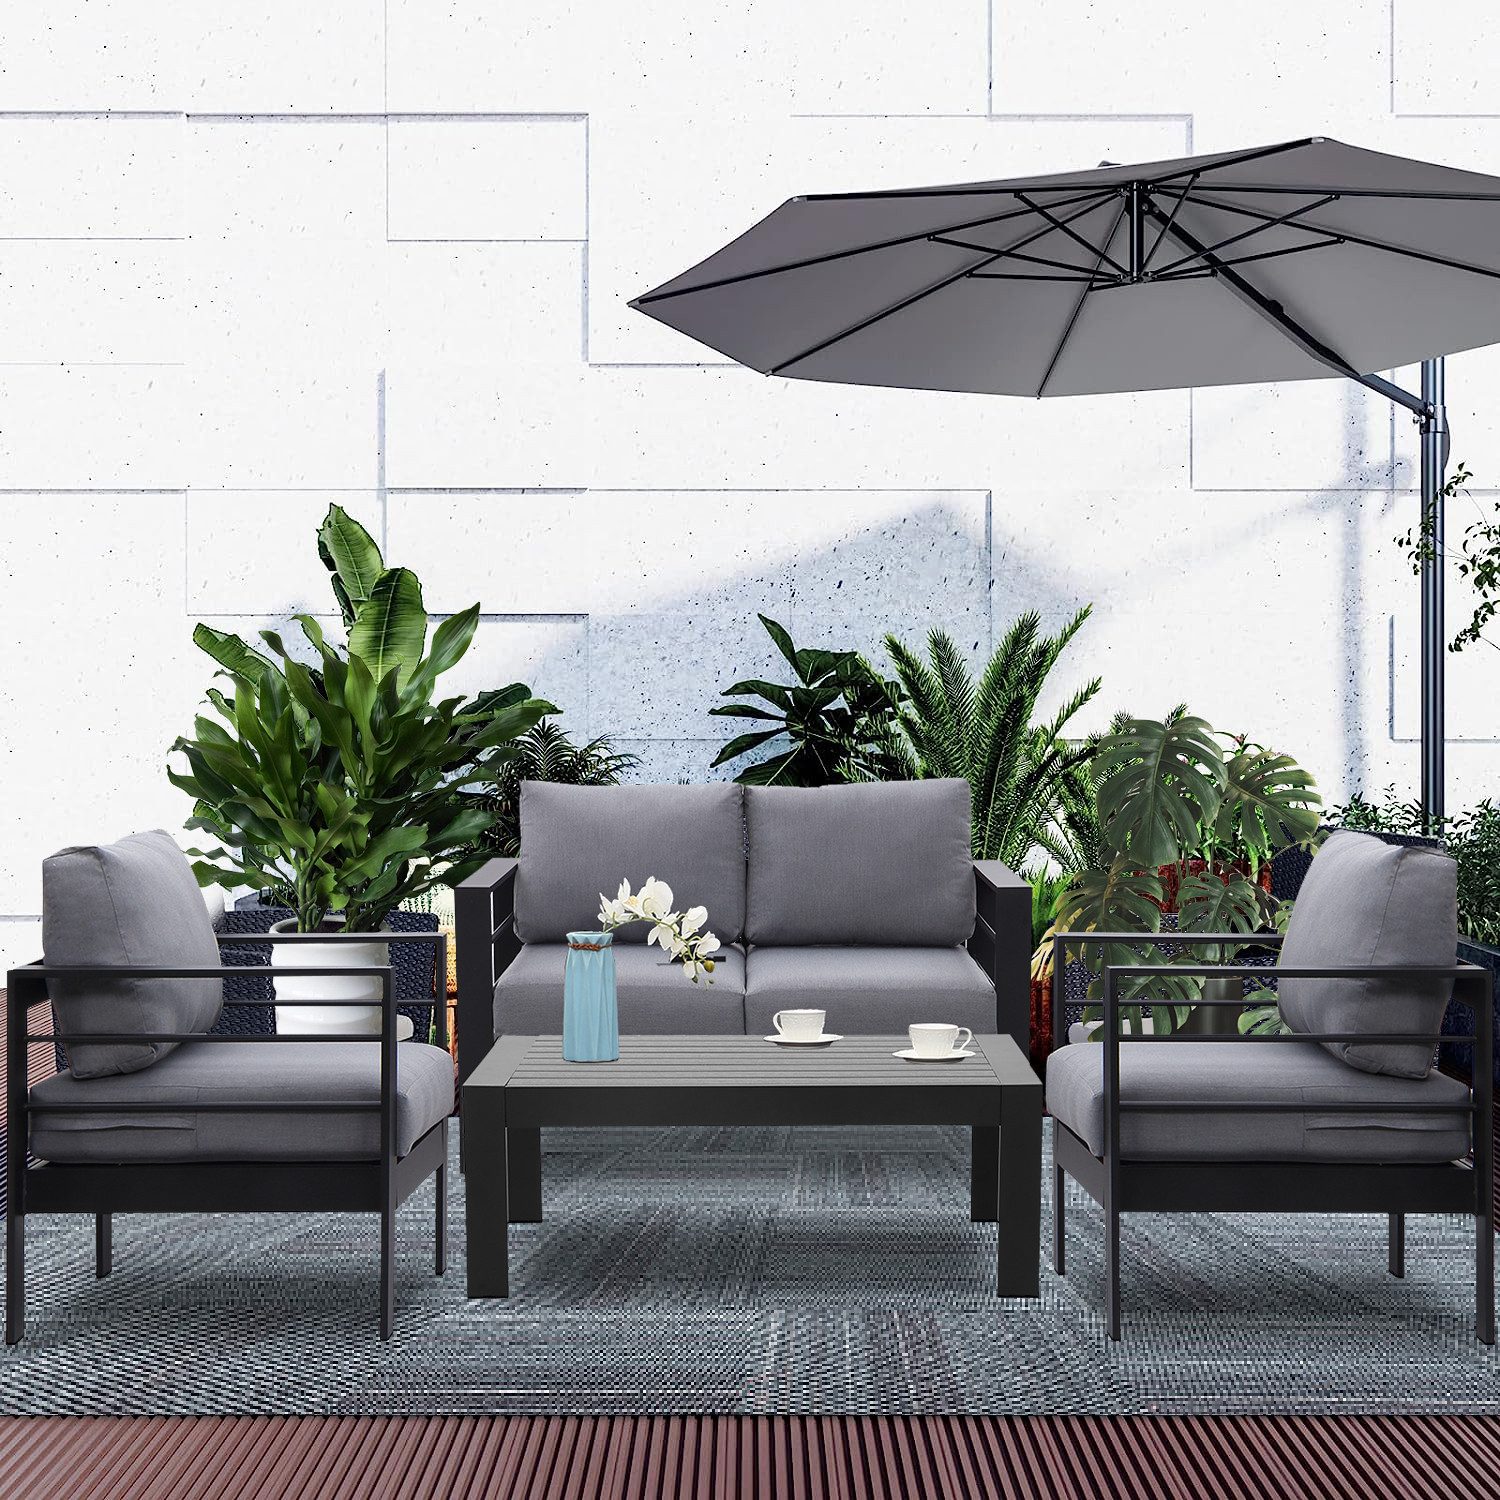 MeXo Gartenlounge-Set Gartenmöbel Set Aluminium Loungeset für Terrasse Balkon, (Set, 1×2-Sitzer Sofa, 2×Sessel, 1×Tisch, 8×Auflagen), wetterfest Sitzgruppe Gartengarnitur für 3-4 Personen